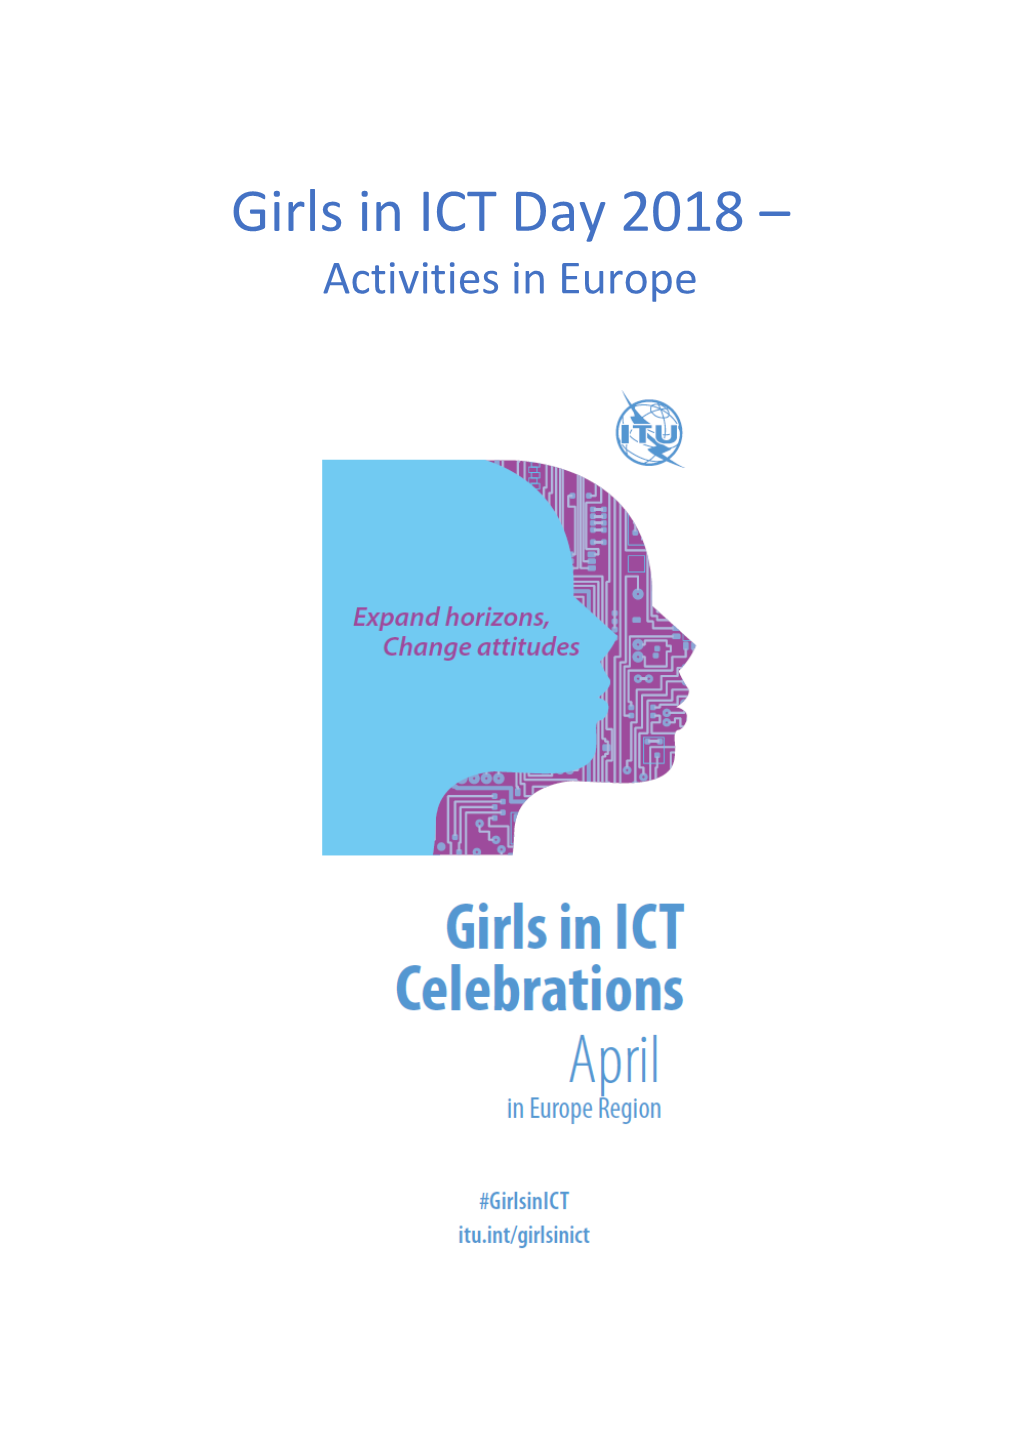 International Girls in ICT Day 2017: ACTIVITIES in EUROPE